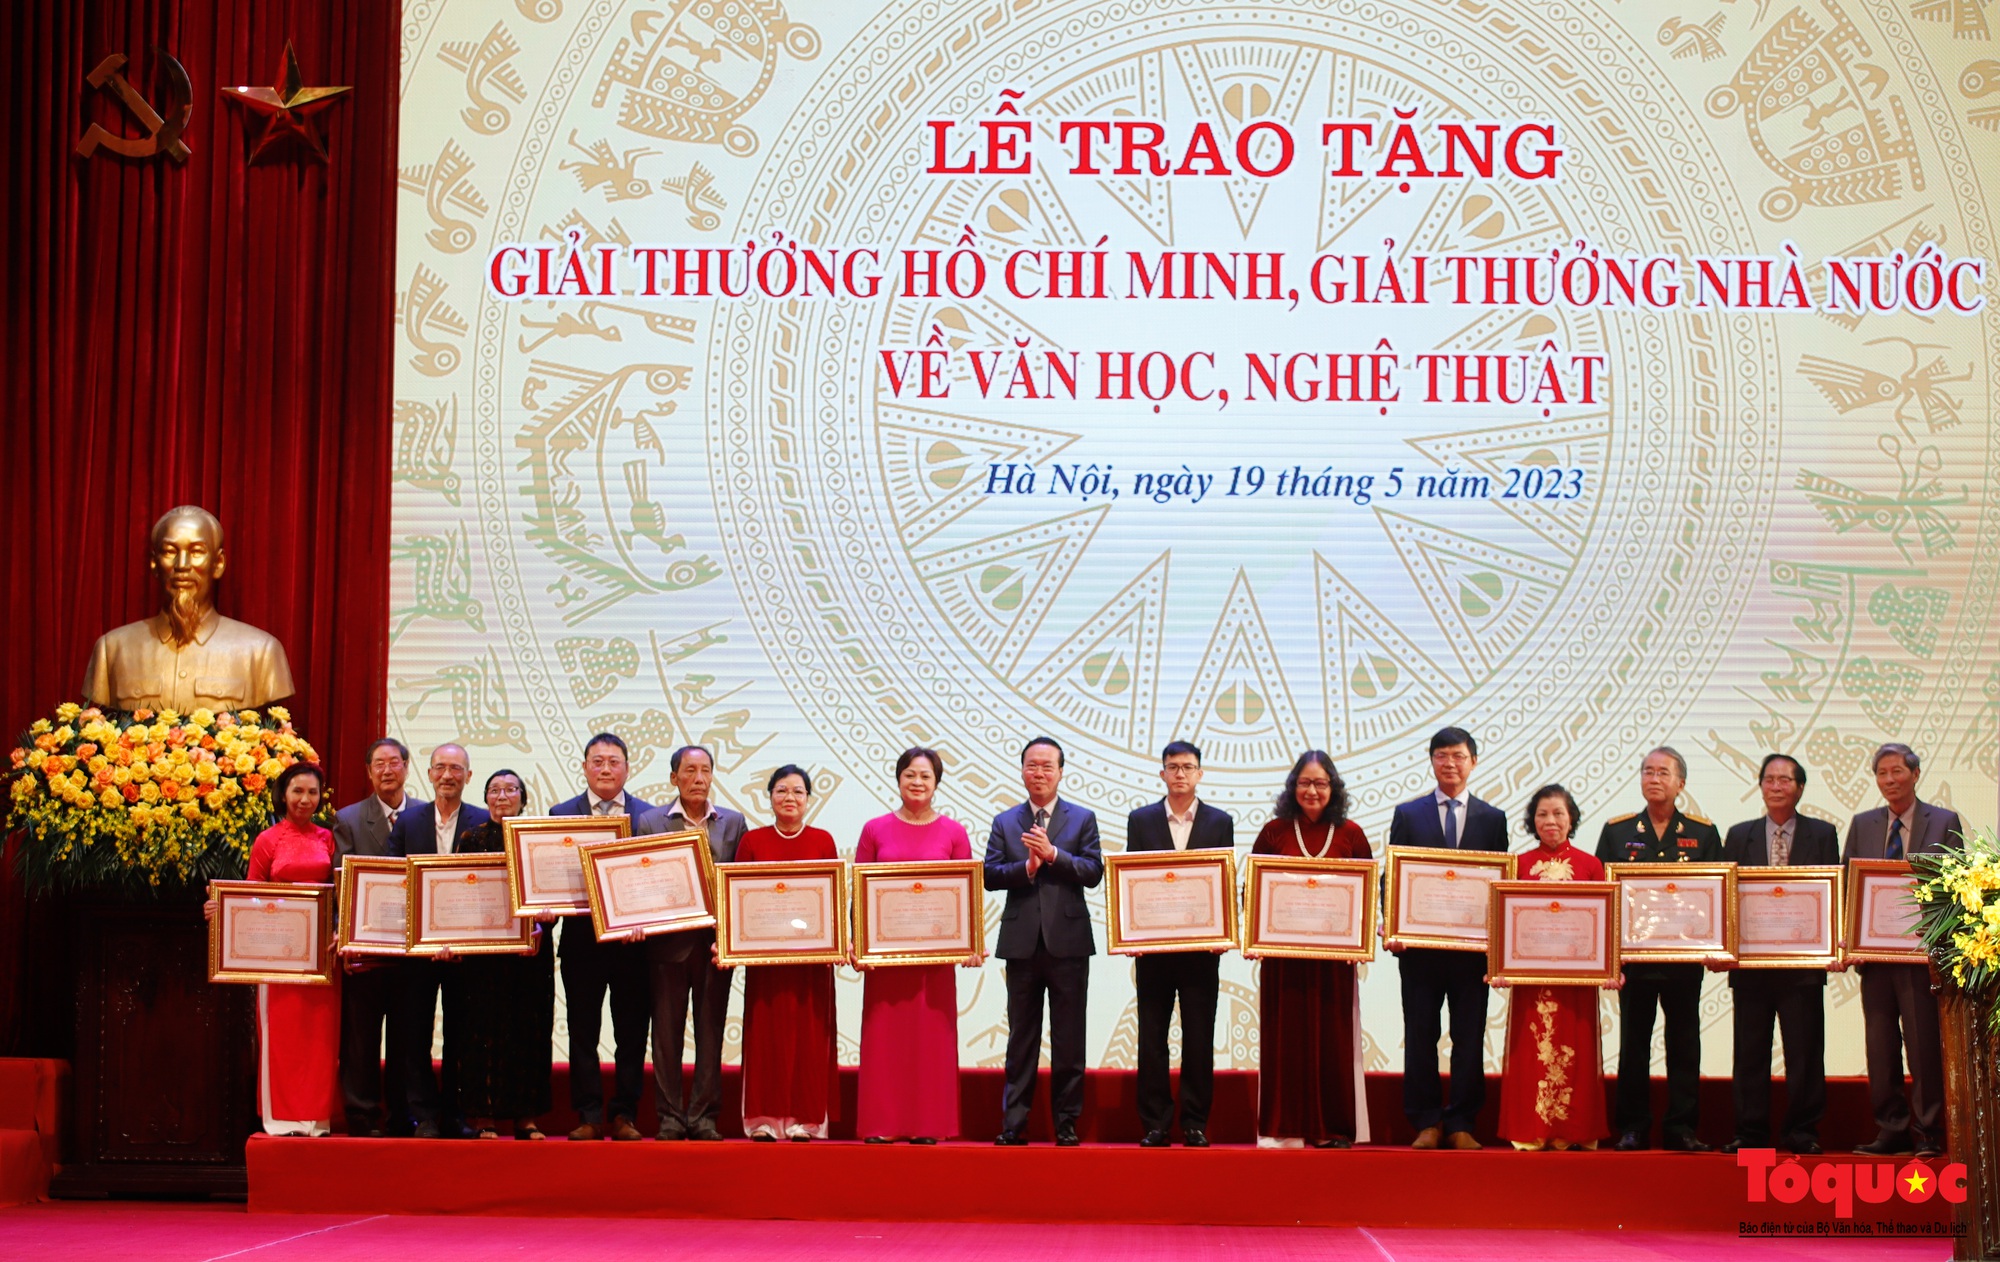 Về việc chi trả tiền Giải thưởng Hồ Chí Minh, Giải thưởng Nhà nước về VHNT: Rút ngắn thủ tục, chi trả tiền Giải thưởng trong thời gian sớm nhất - Ảnh 1.